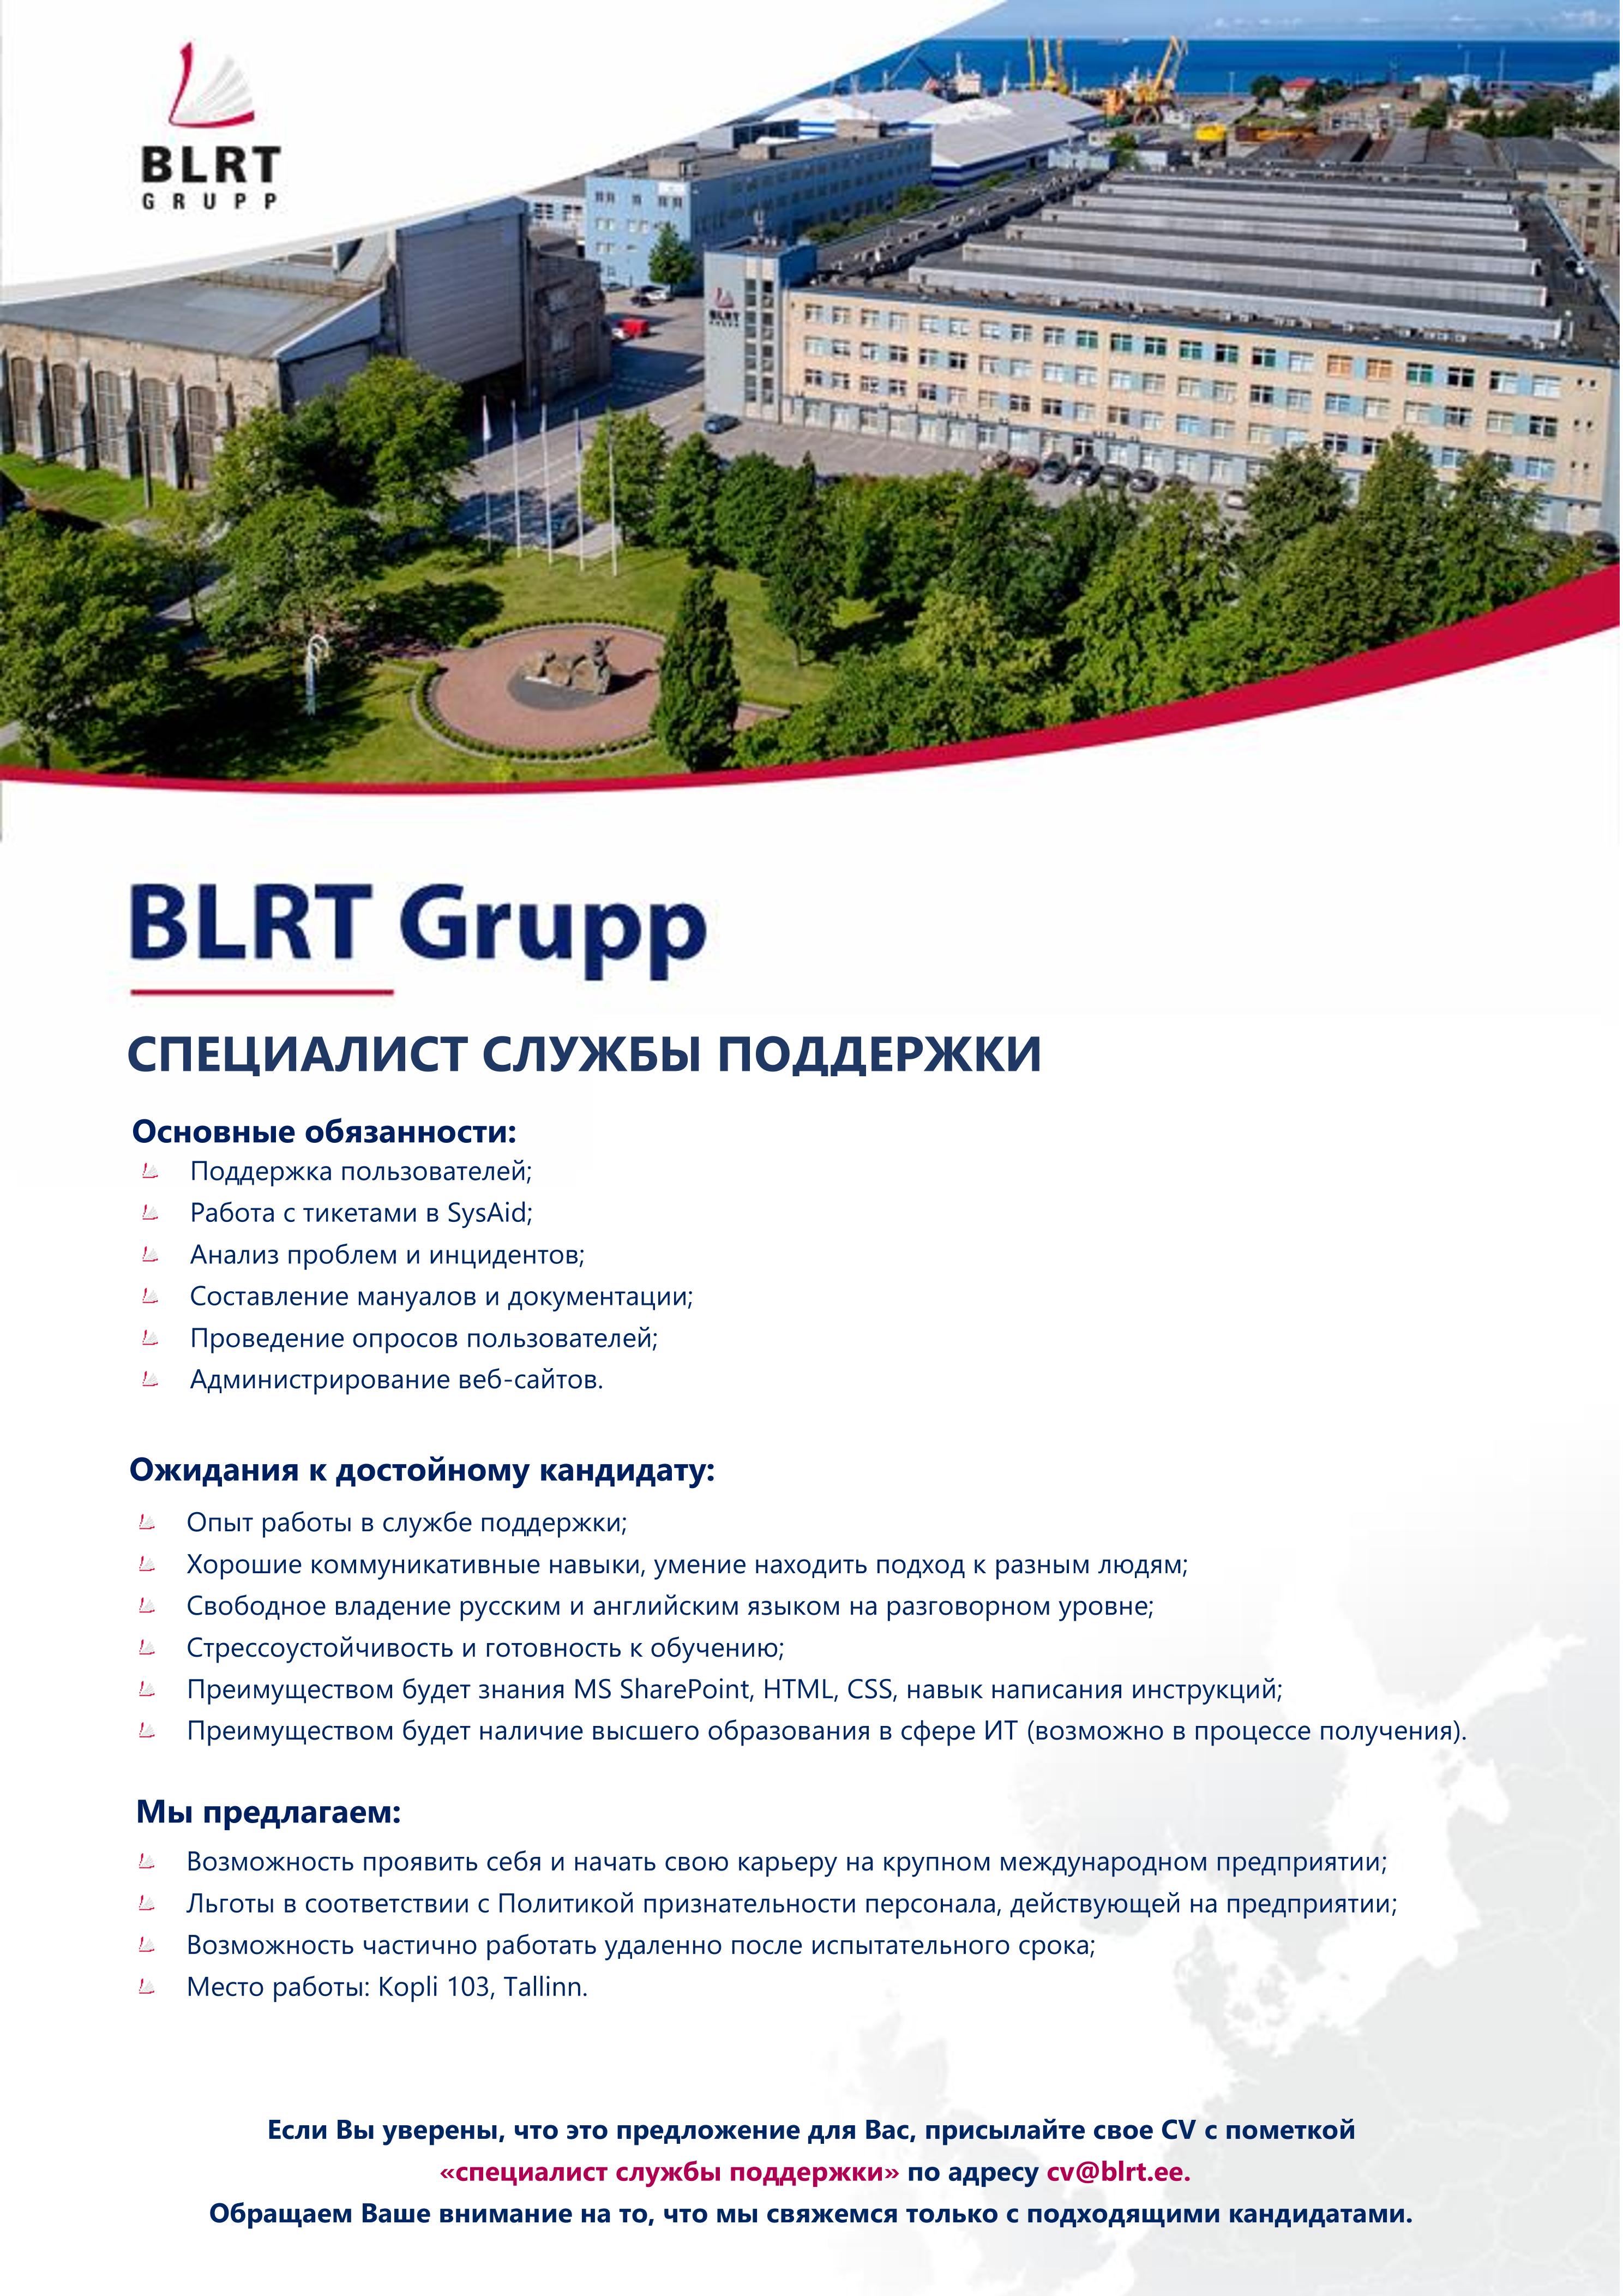 BLRT Grupp Специалист службы поддержки